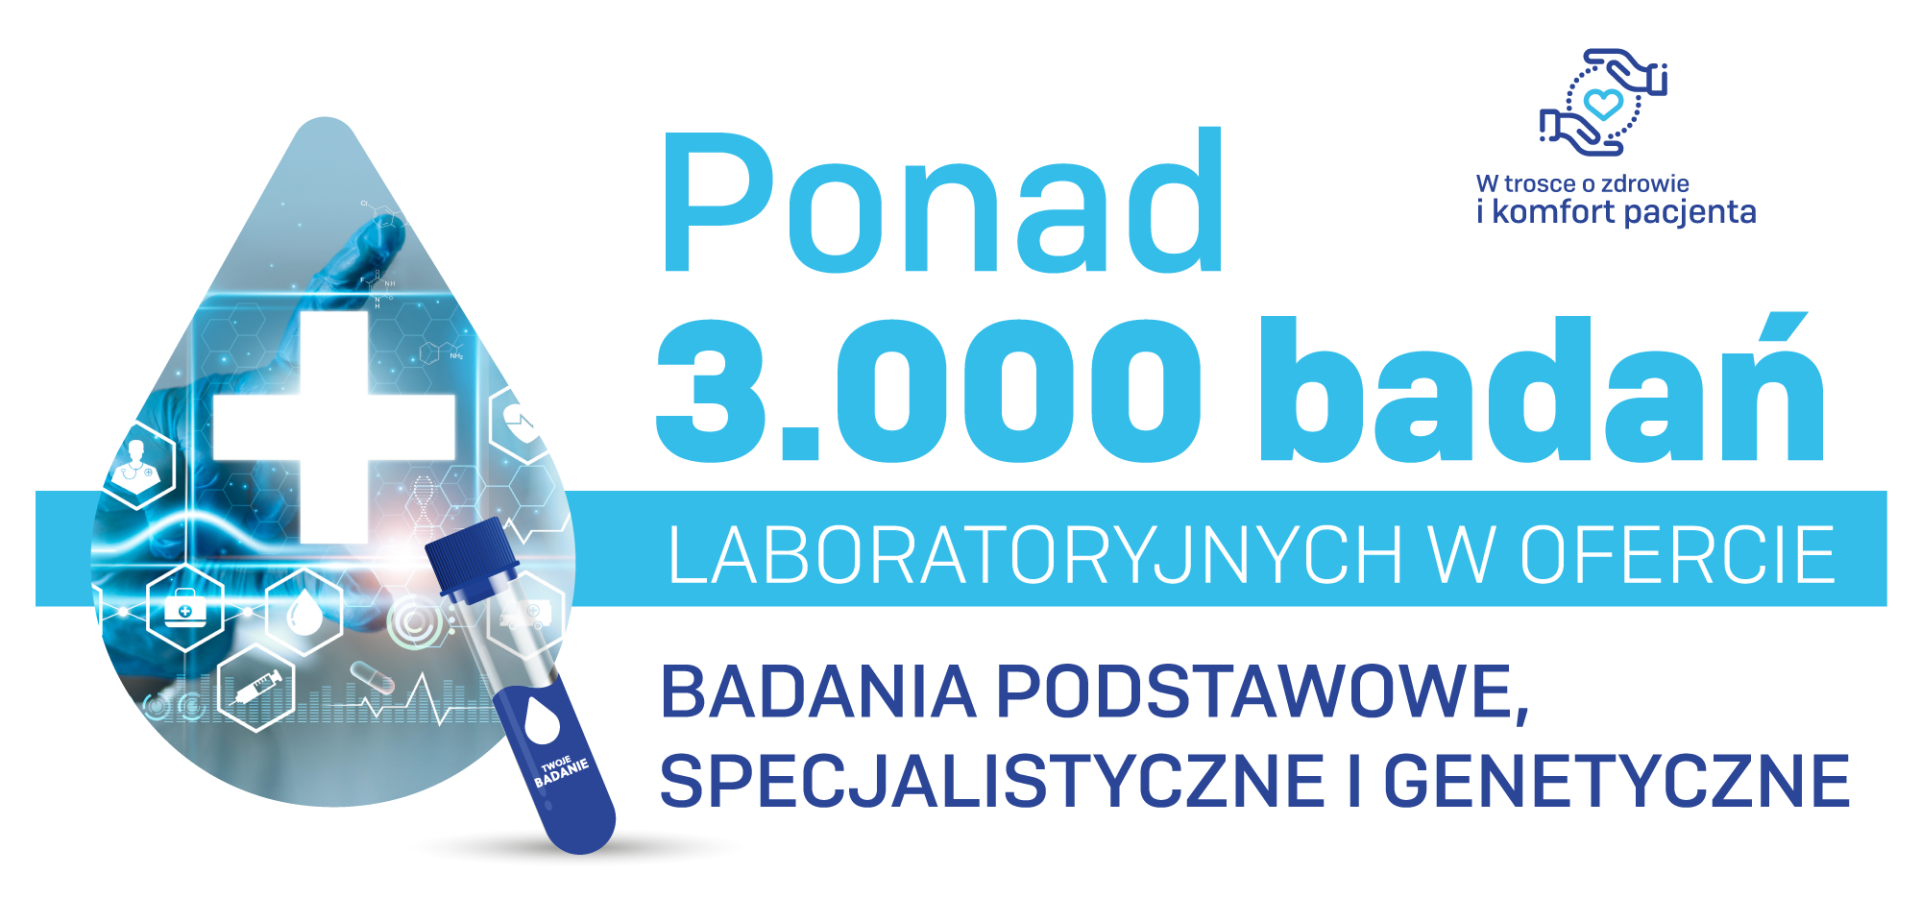 Ponad 3000 badań laboratoryjnych, badania podstawowe, specjalistyczne i genetyczne